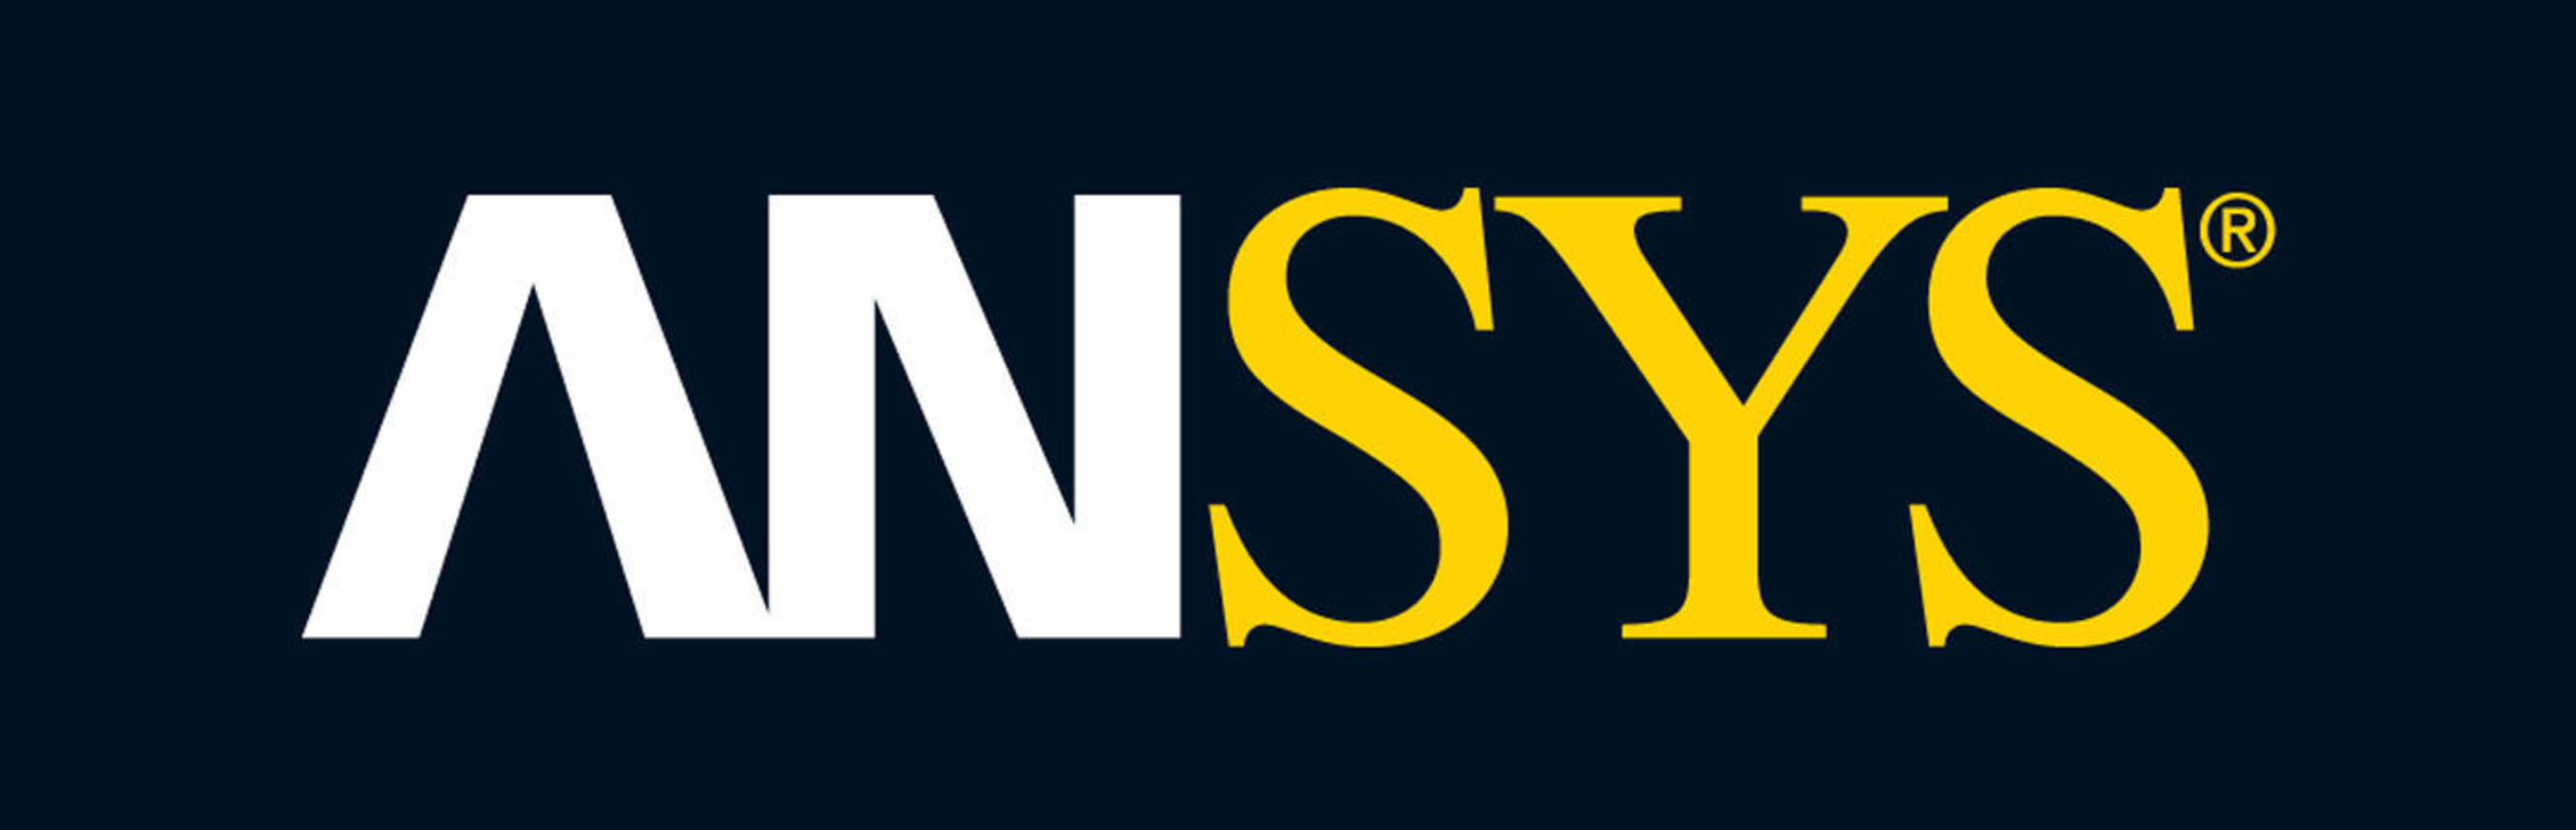 ANSYS, Inc. logo. (PRNewsFoto/ANSYS, Inc.) (PRNewsFoto/)